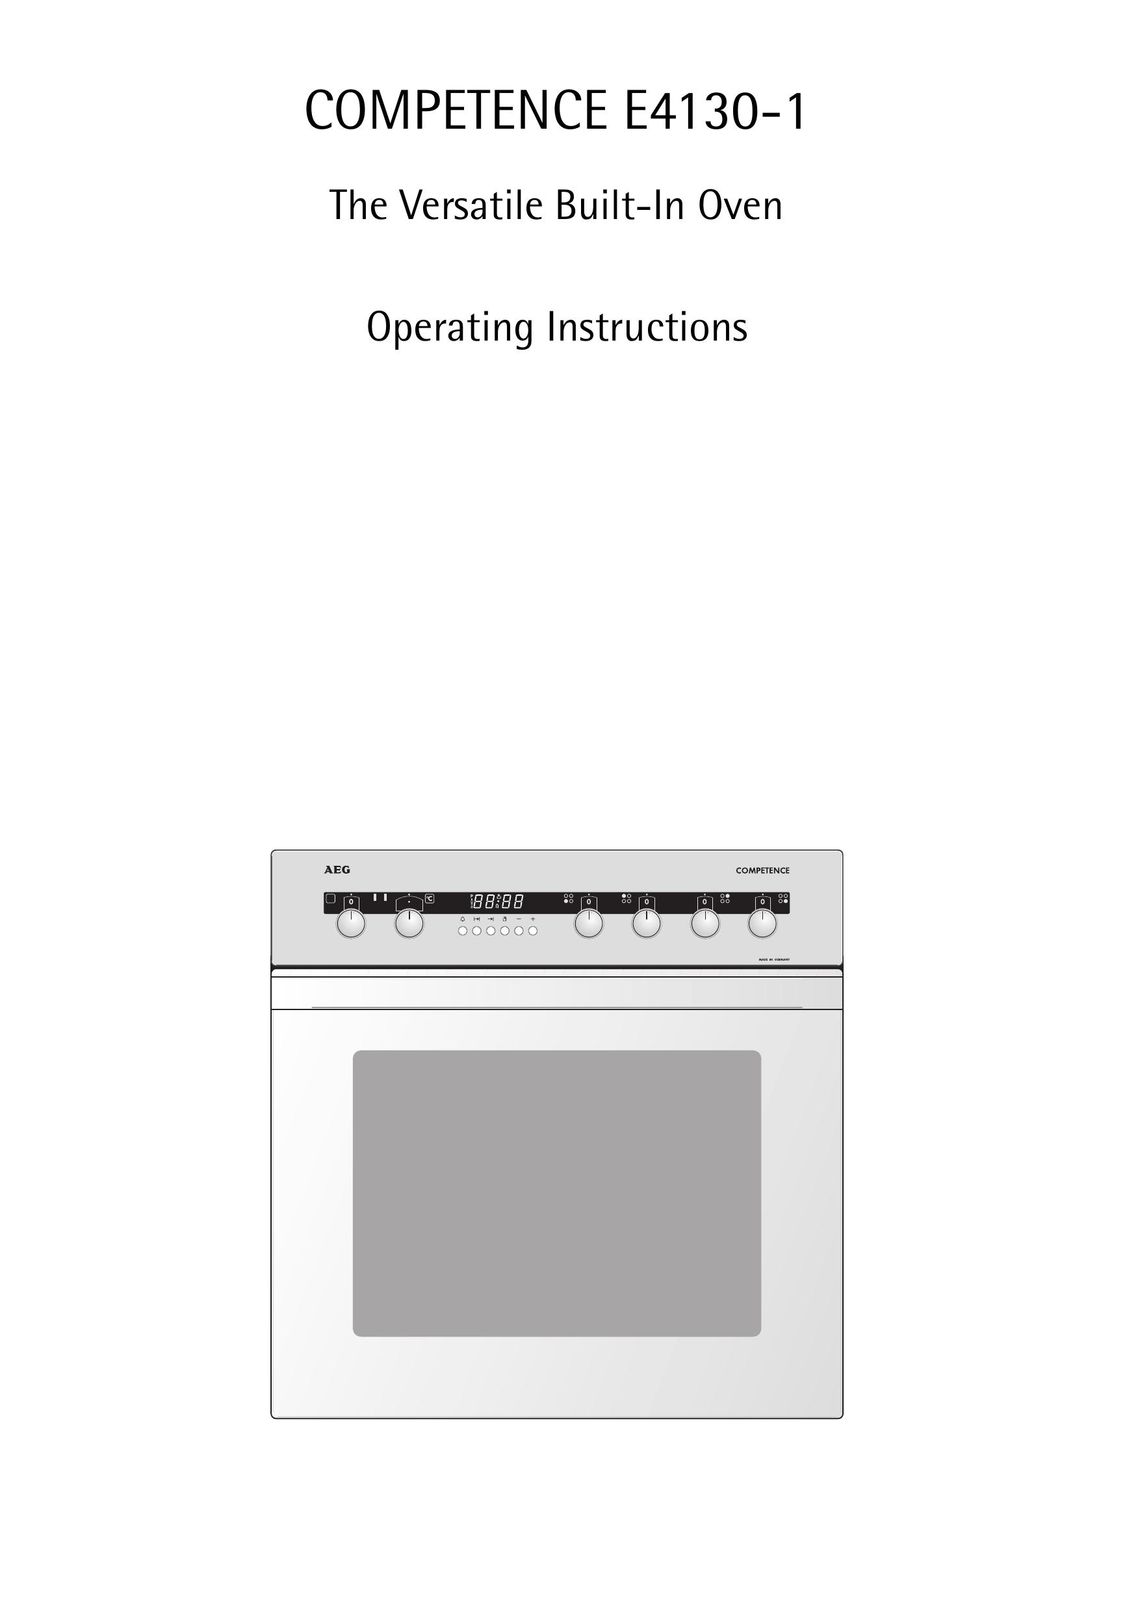 AEG E4130-1 Oven User Manual